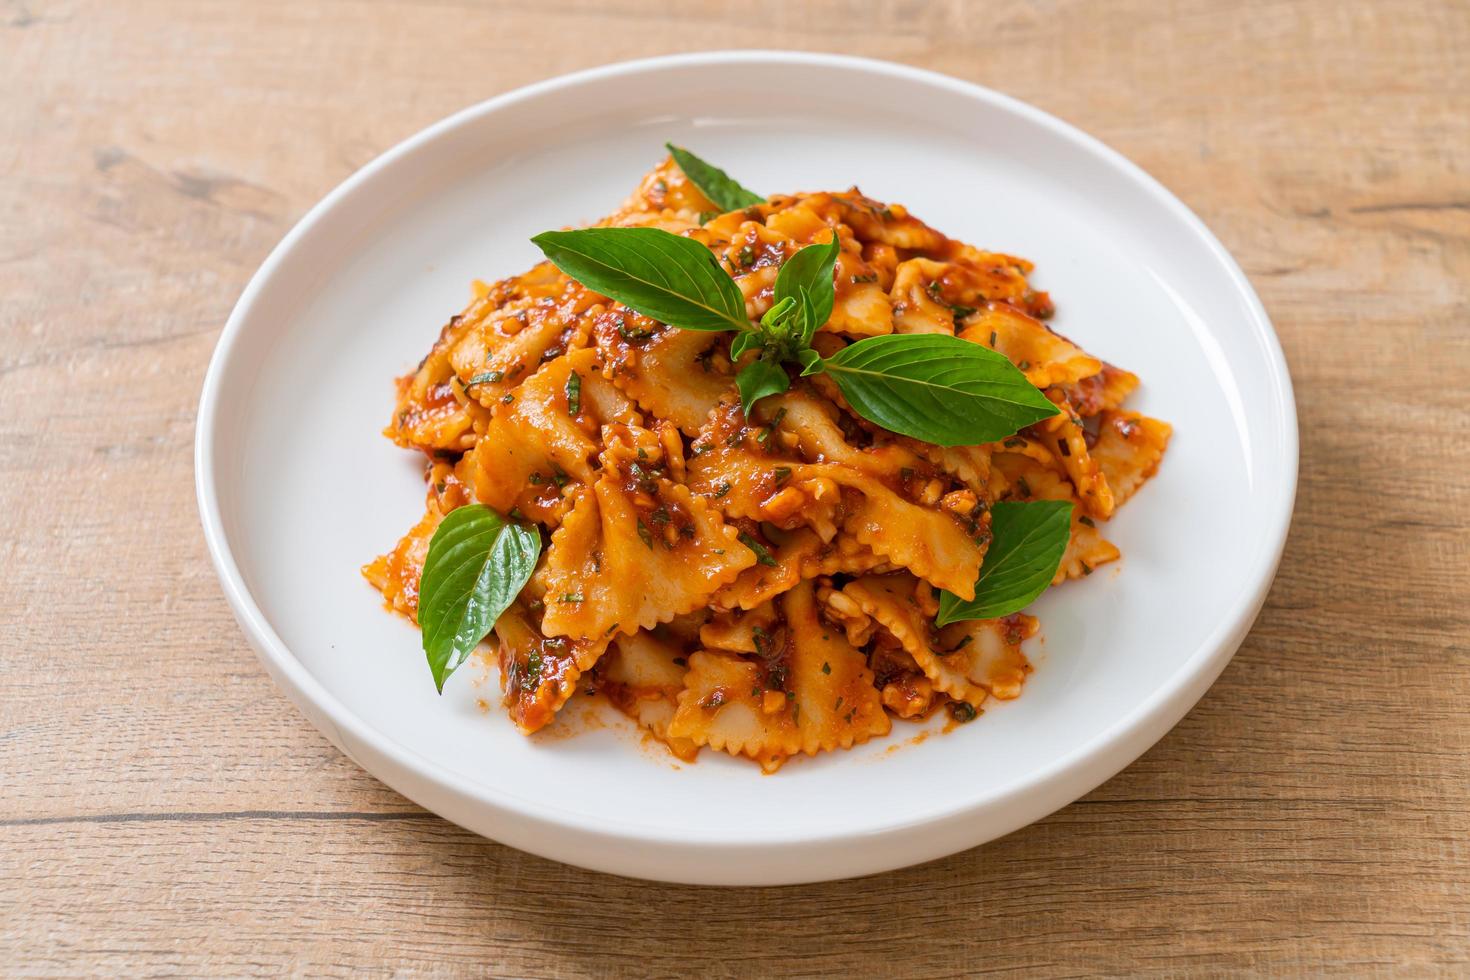 farfalle pasta met basilicum en knoflook in tomatensaus - italiaanse saus foto